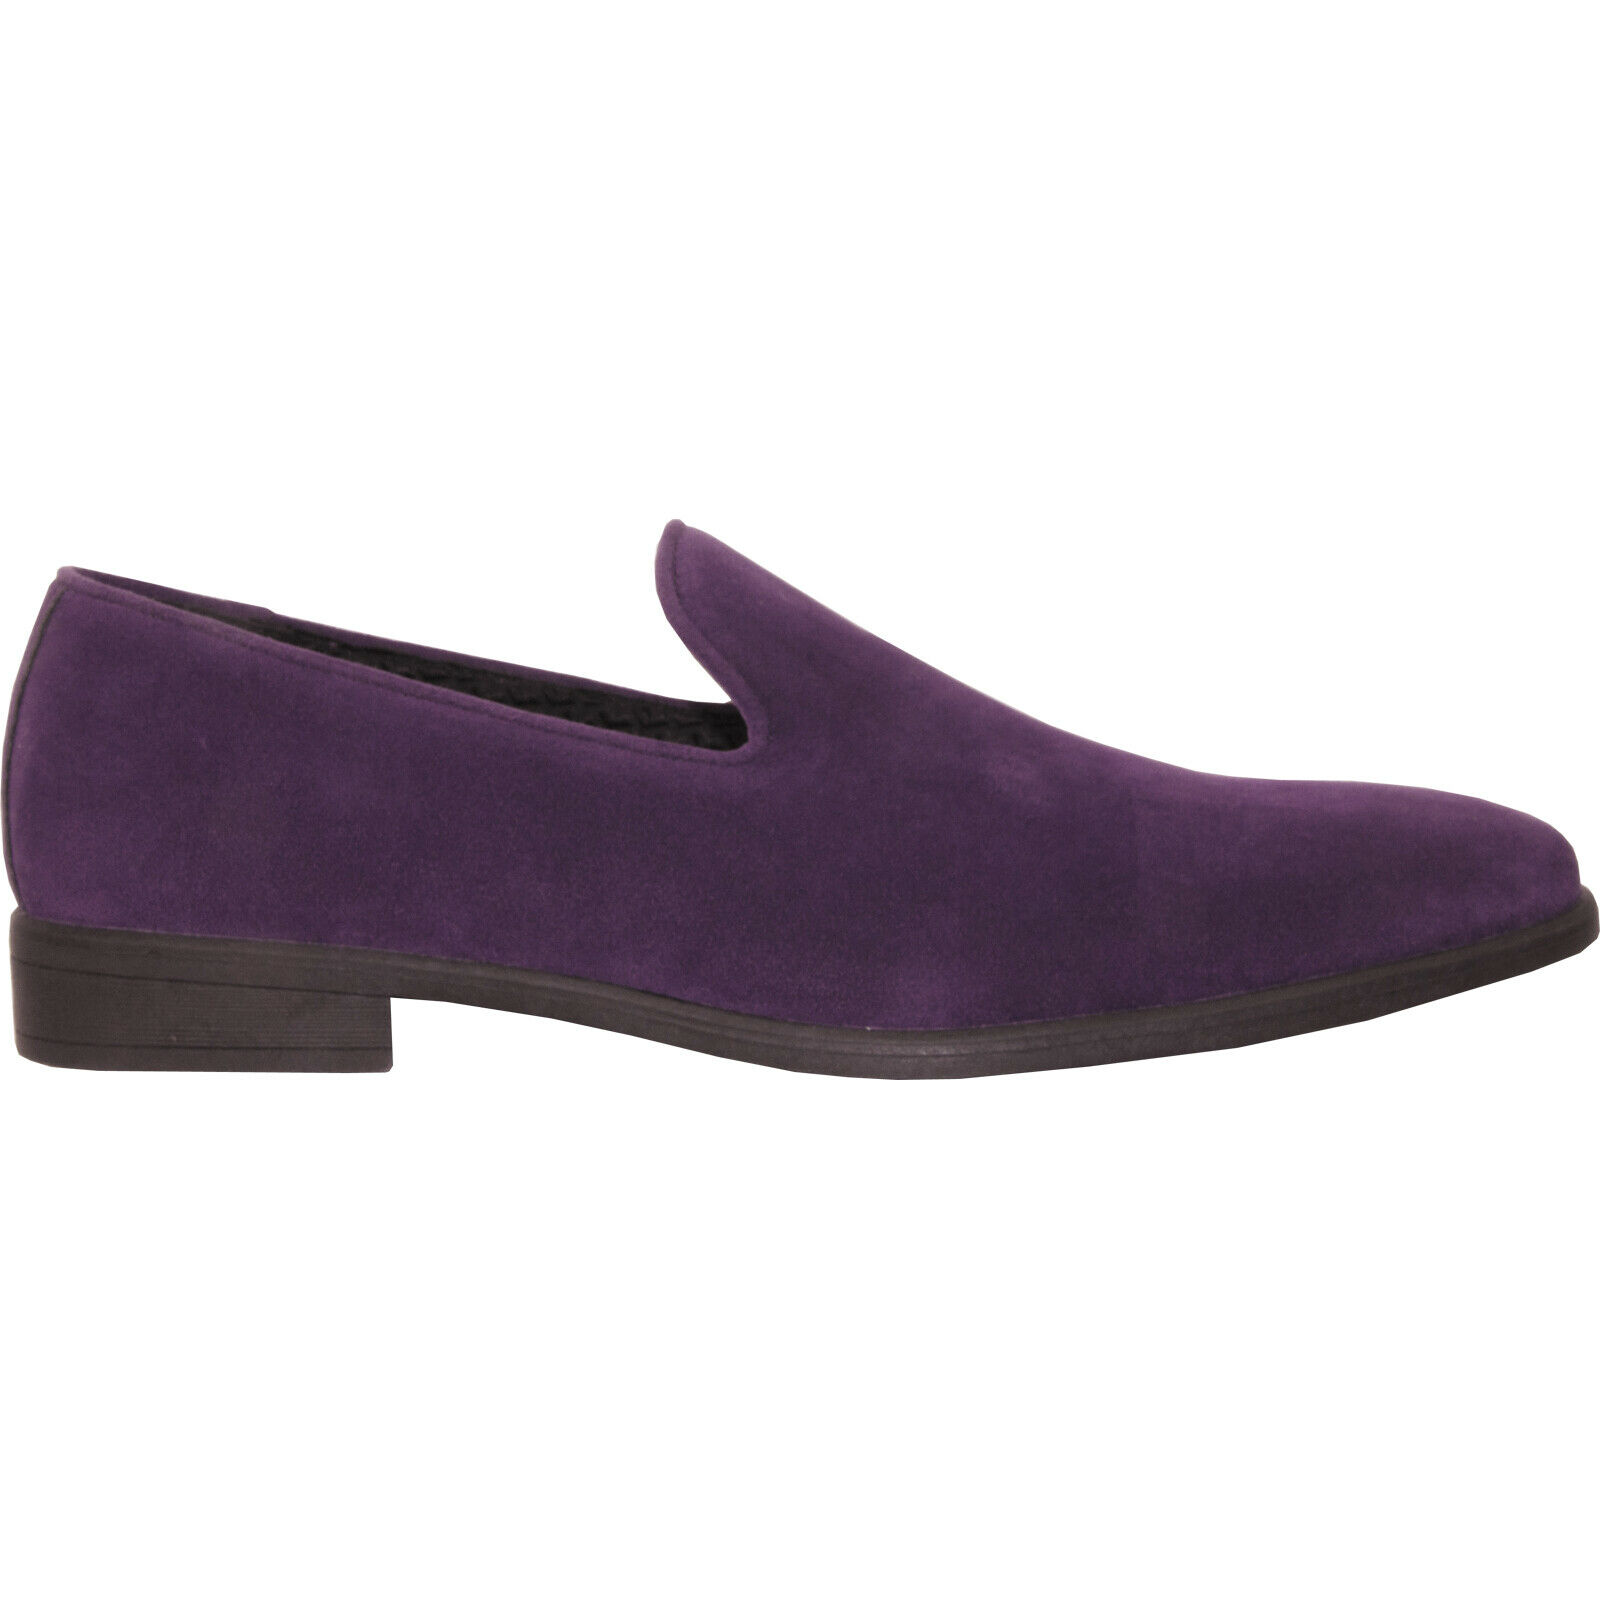 Vangelo Men Dress Shoe KING-5 Loafer Slip On Formal Tuxedo for Prom and Wedding Purple 10M - image 4 of 7